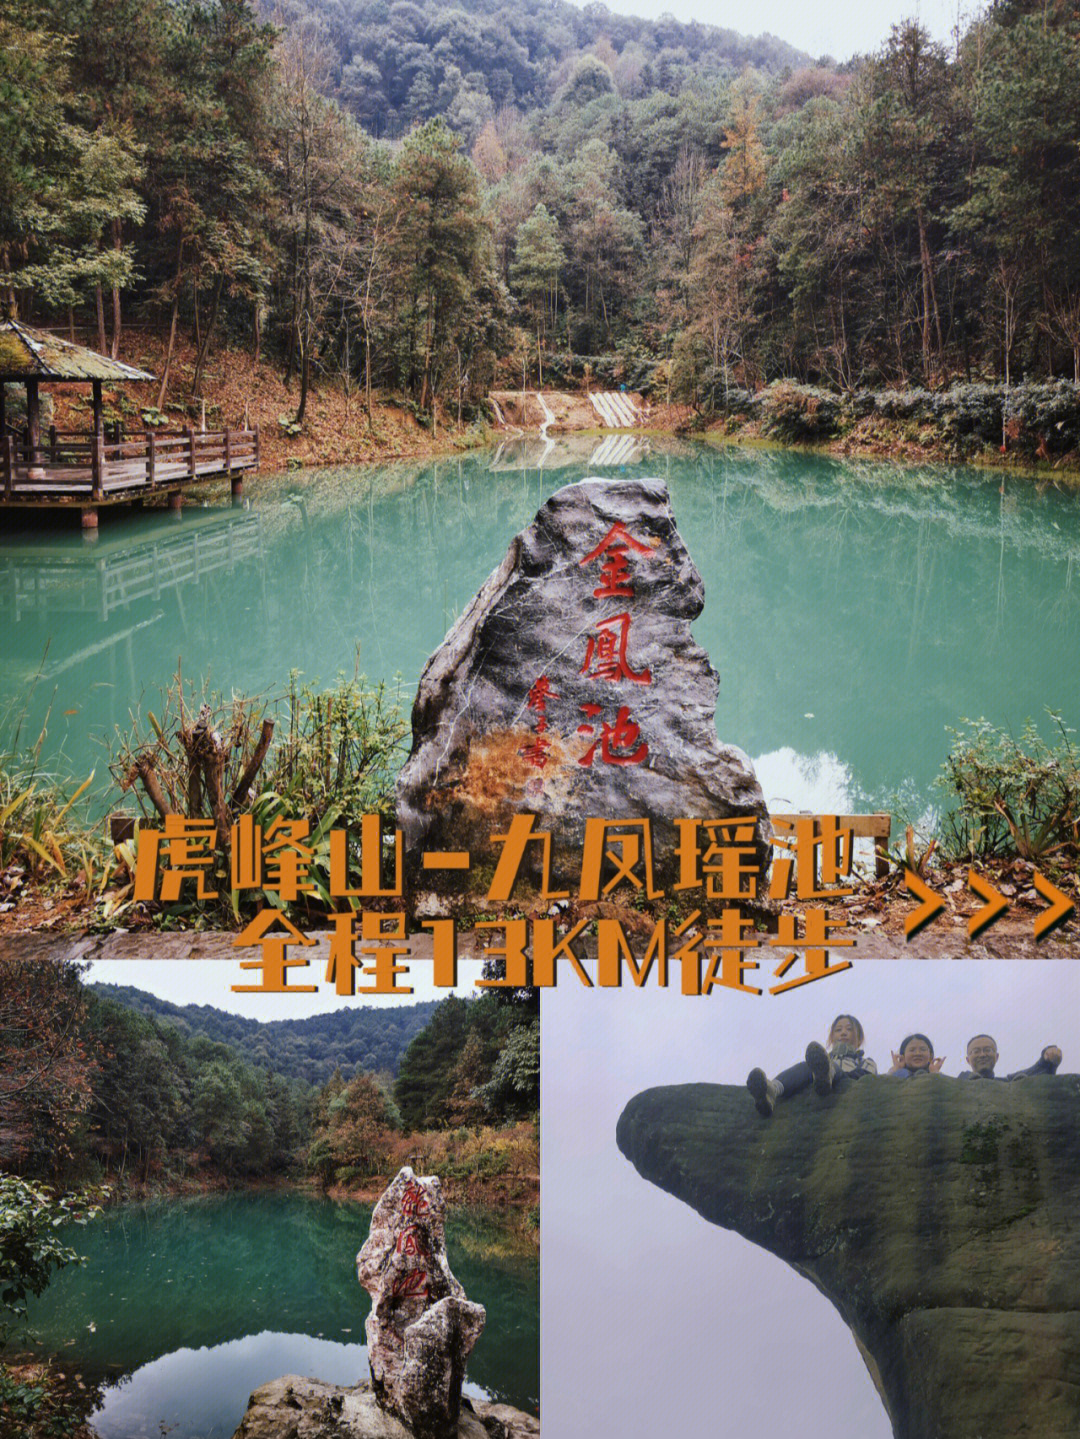 虎峰山九凤瑶池全程13km徒步